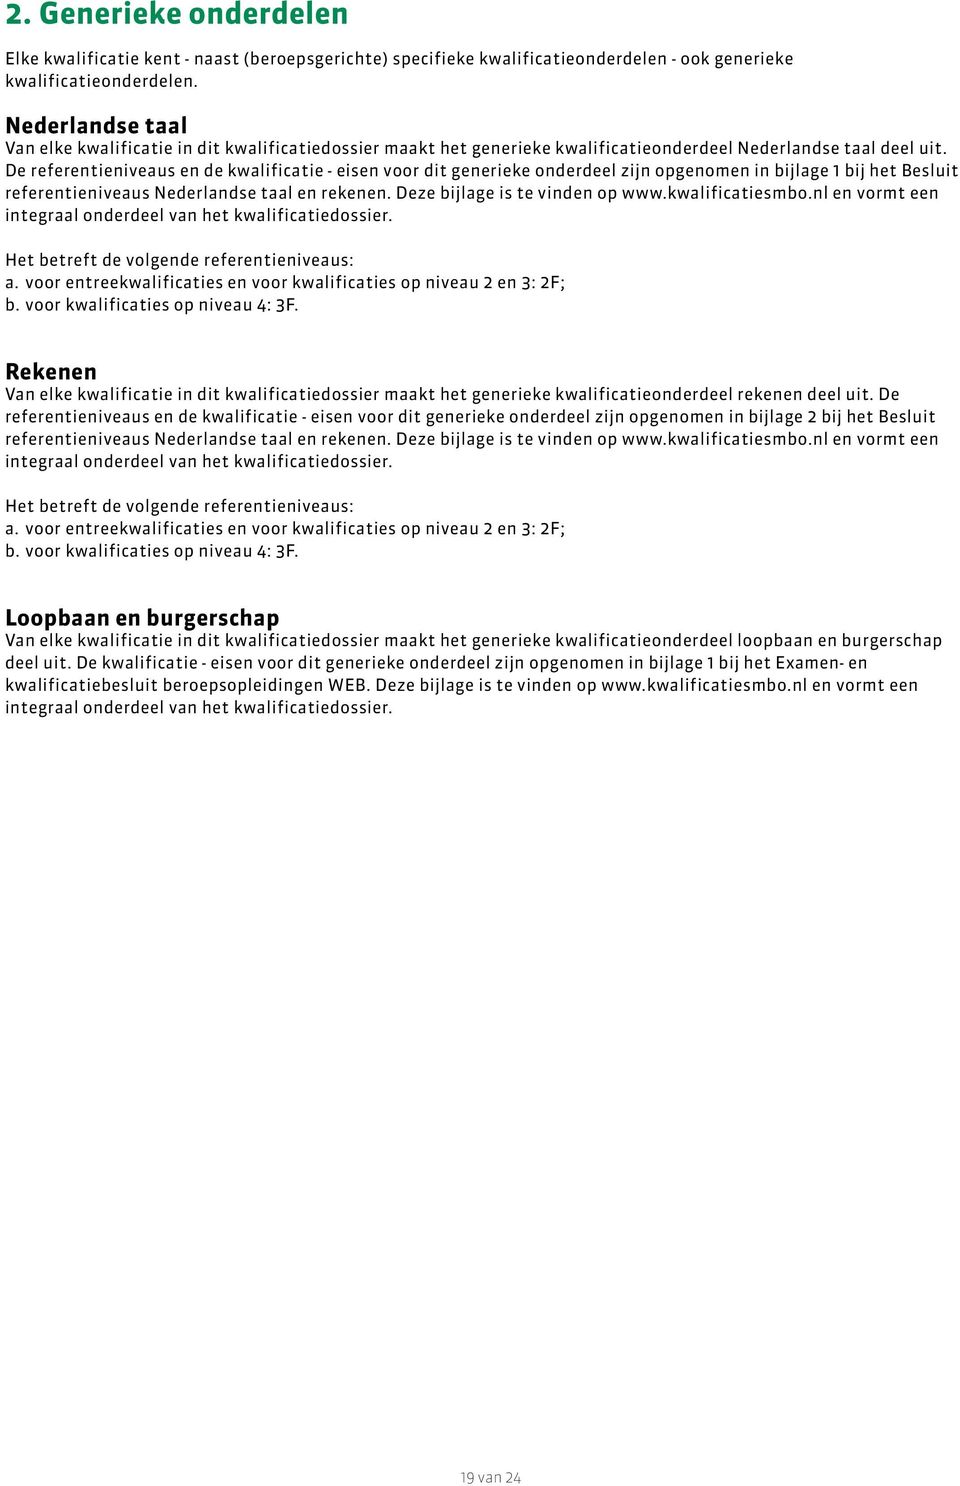 De referentieniveaus en de kwalificatie - eisen voor dit generieke onderdeel zijn opgenomen in bijlage 1 bij het Besluit referentieniveaus Nederlandse taal en rekenen.